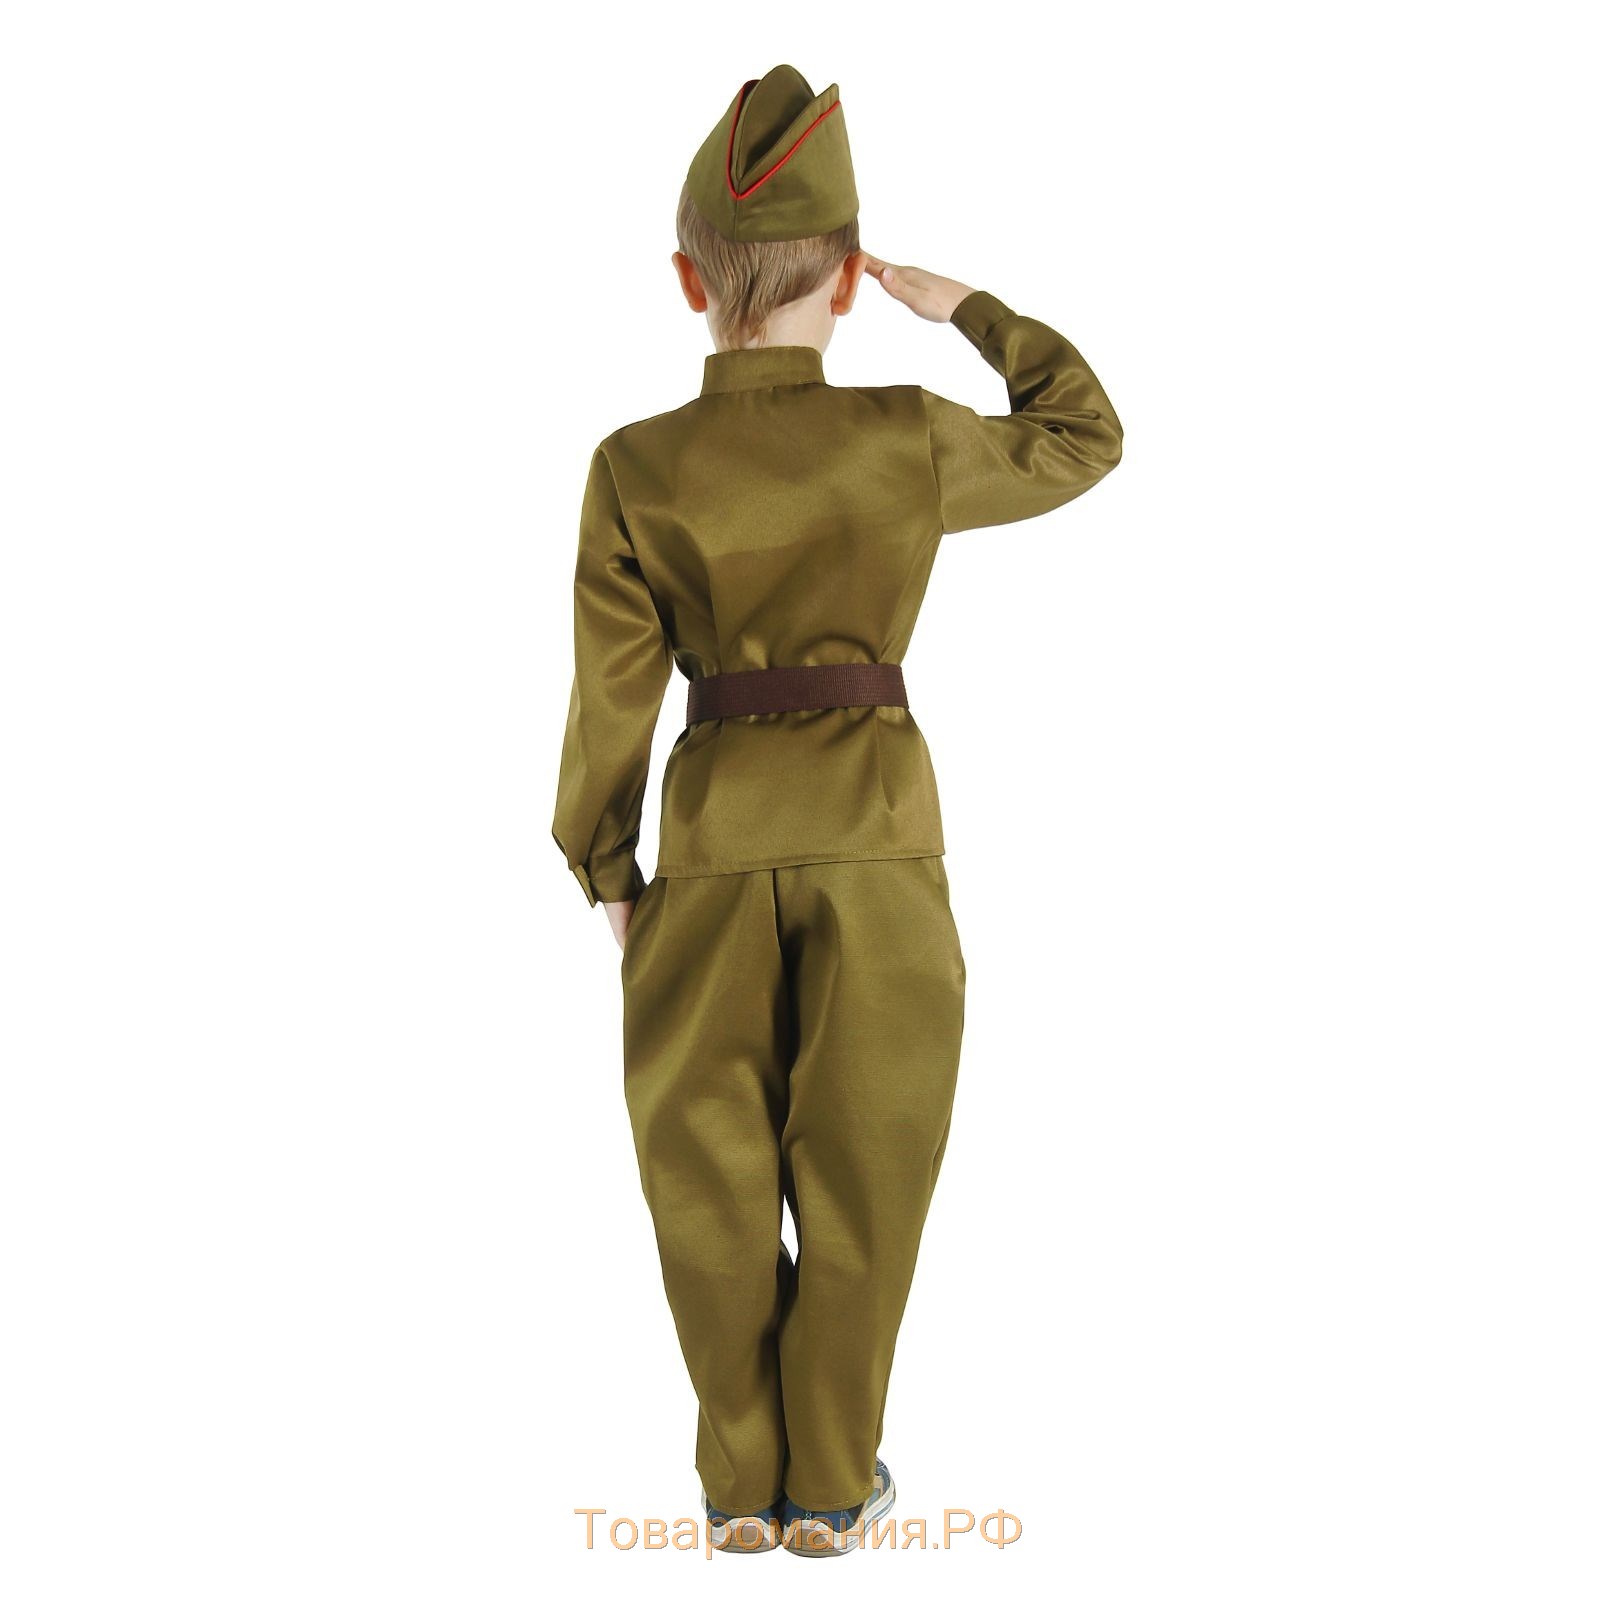 Детский карнавальный костюм "Военный", брюки, гимнастёрка, ремень, пилотка, р-р 28-30, рост 104-110 см